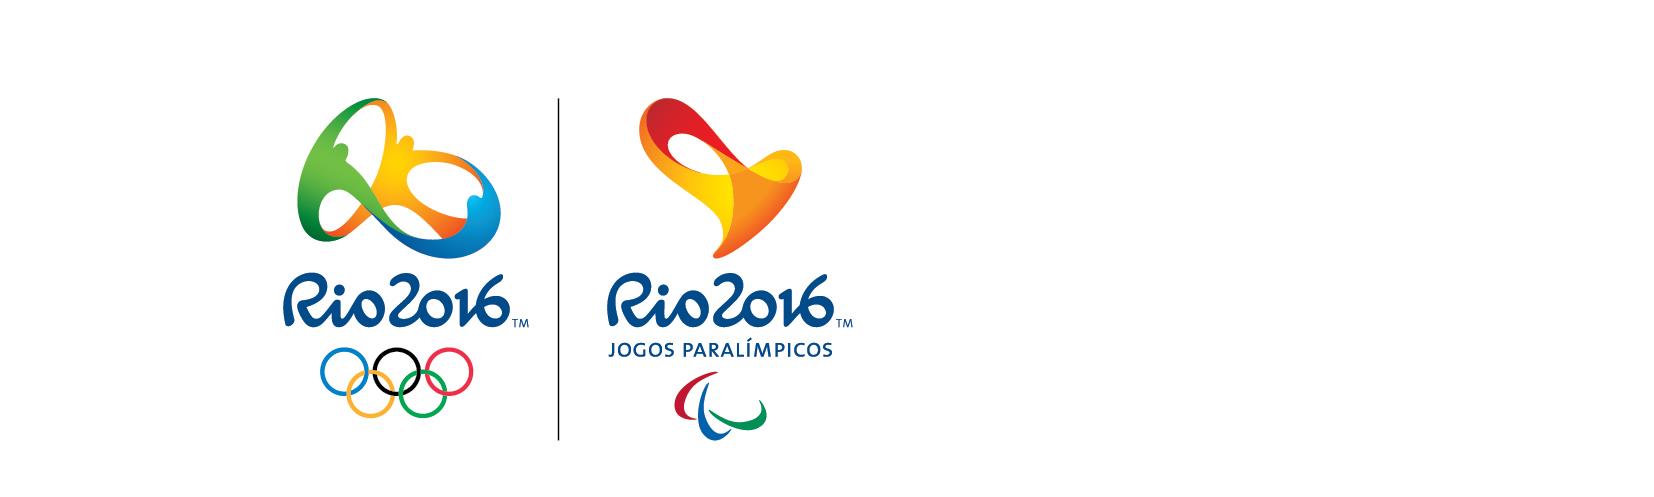 Requeriments de Divisórias Esprtivas: Requeriments Mandatóris: Assinar e seguir a Declaraçã de Cnduta Sustentável desenvlvida pel Cmitê Organizadr ds Jgs Olímpics e Paralímpics Ri 2016; O frnecedr